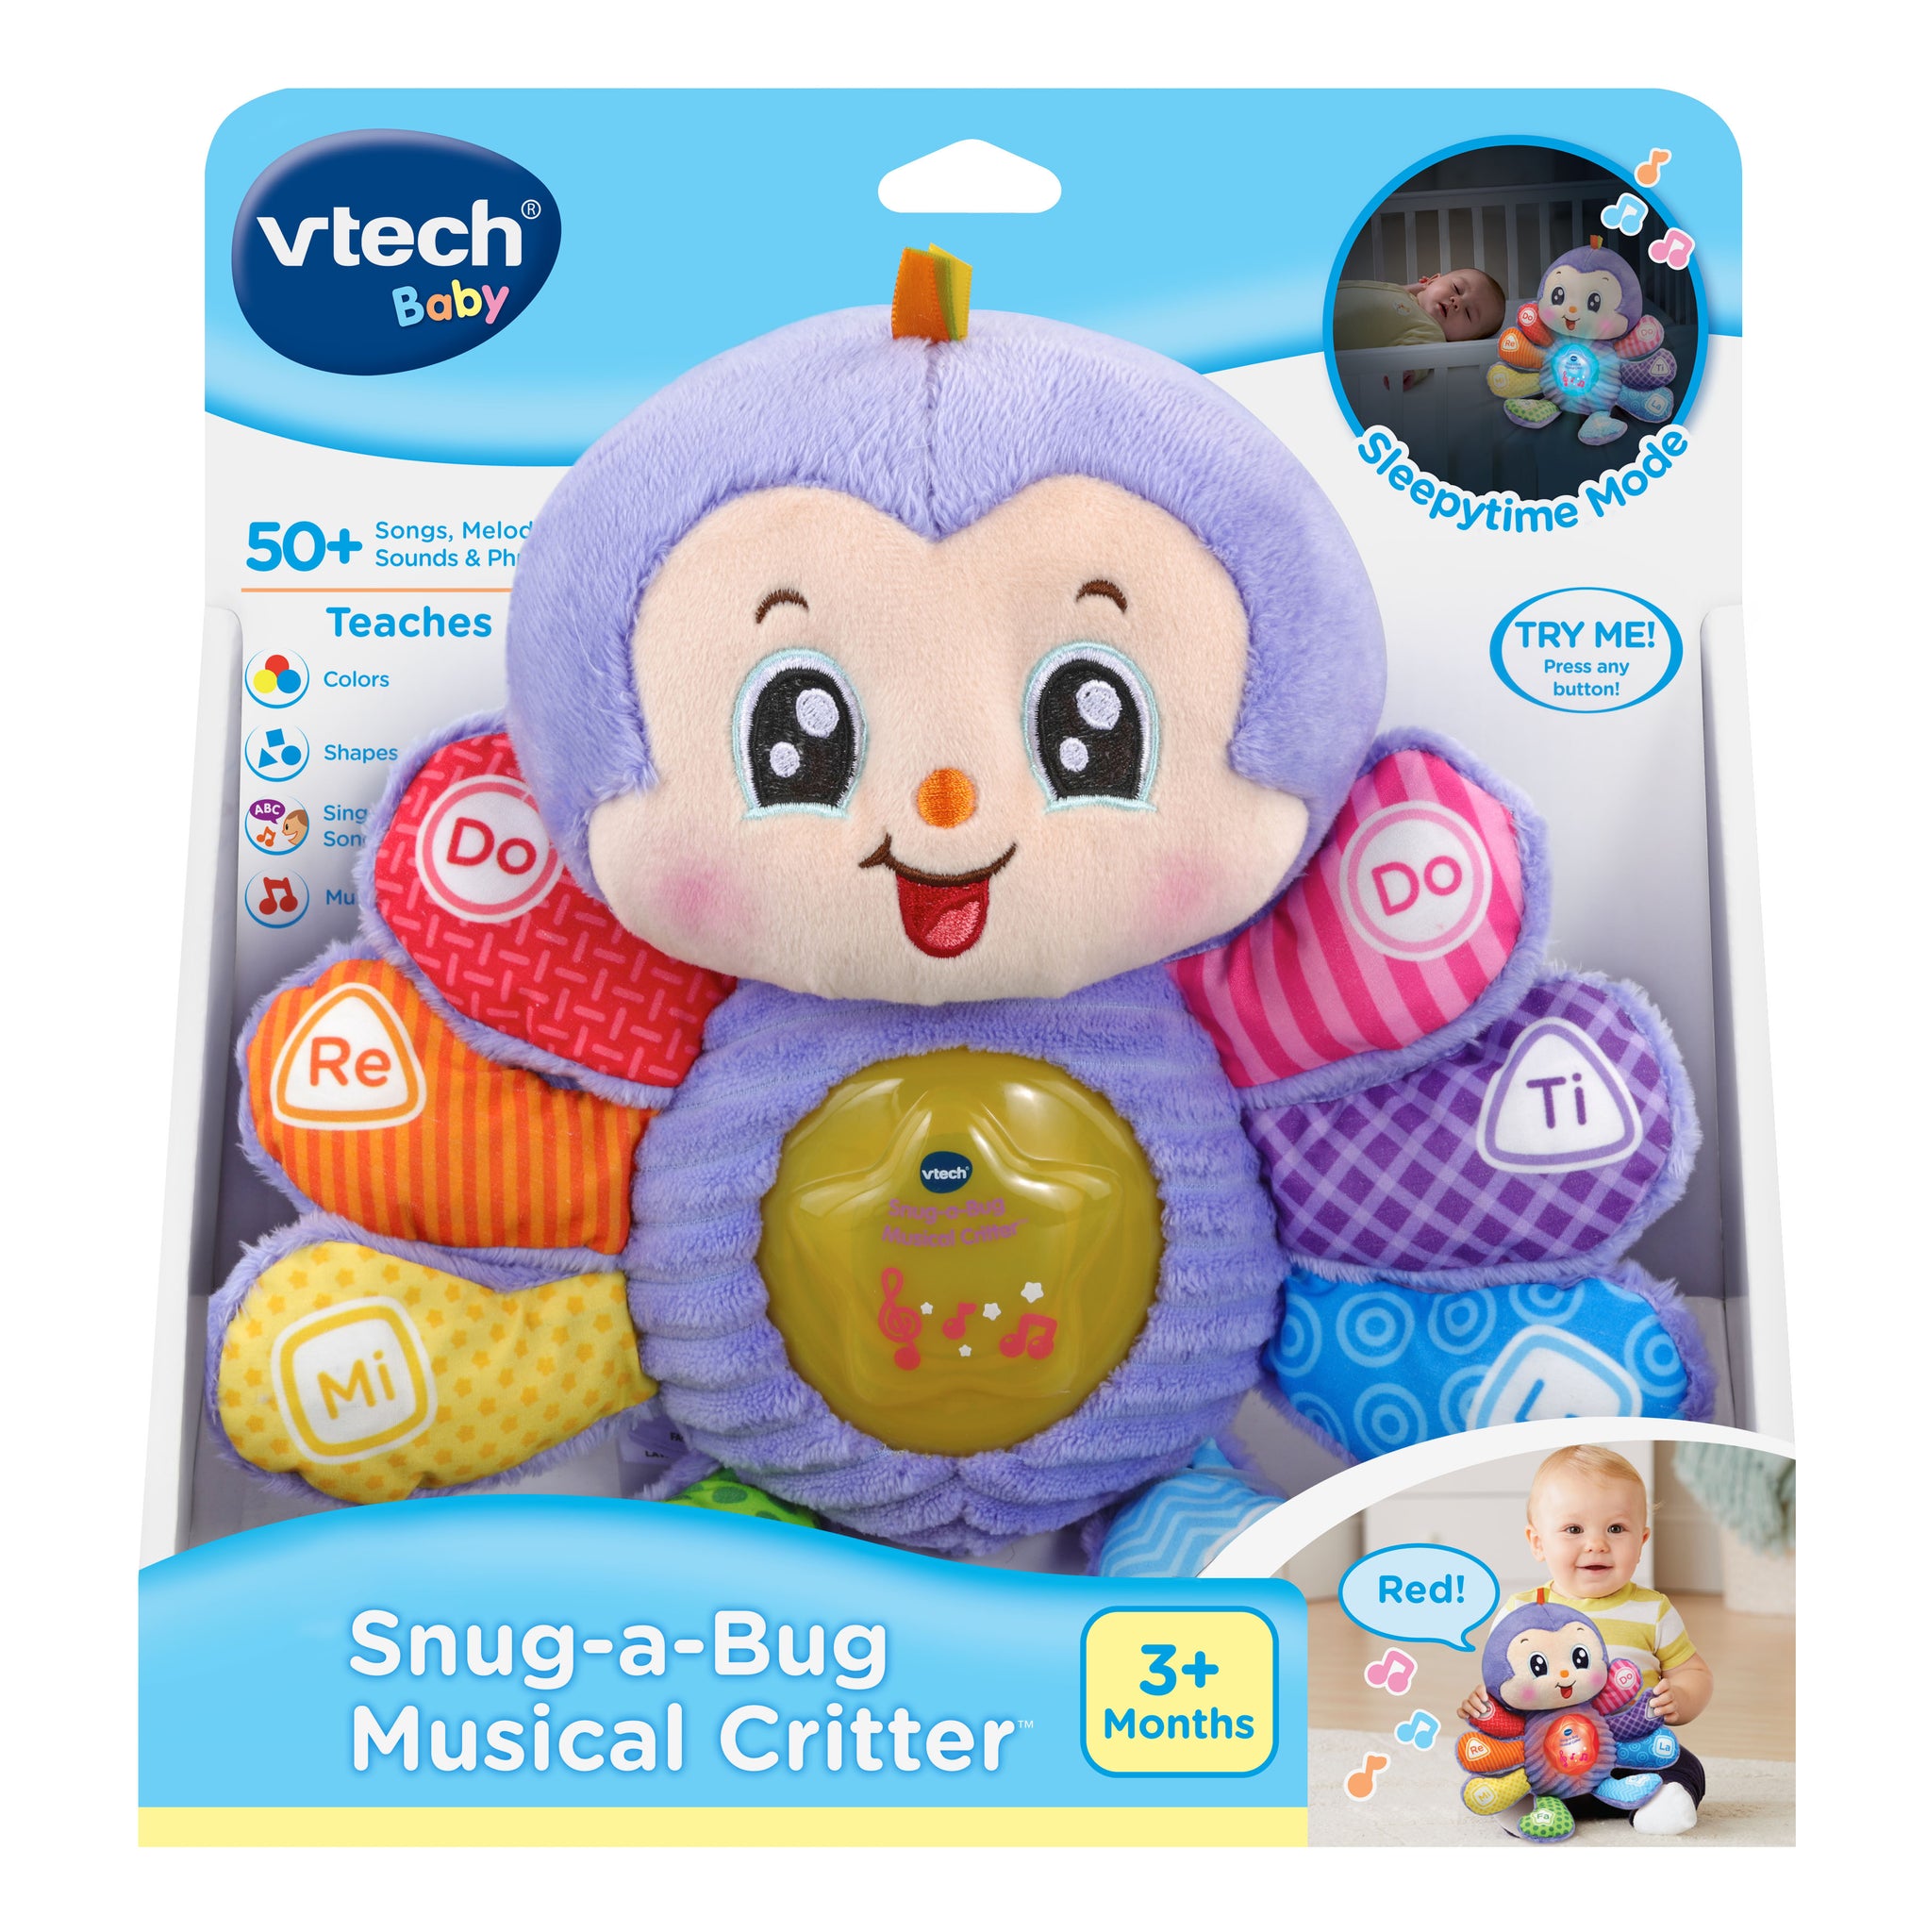 Vtech VTech Baby® Snug-a-Bug Musical Critter™ - Purple